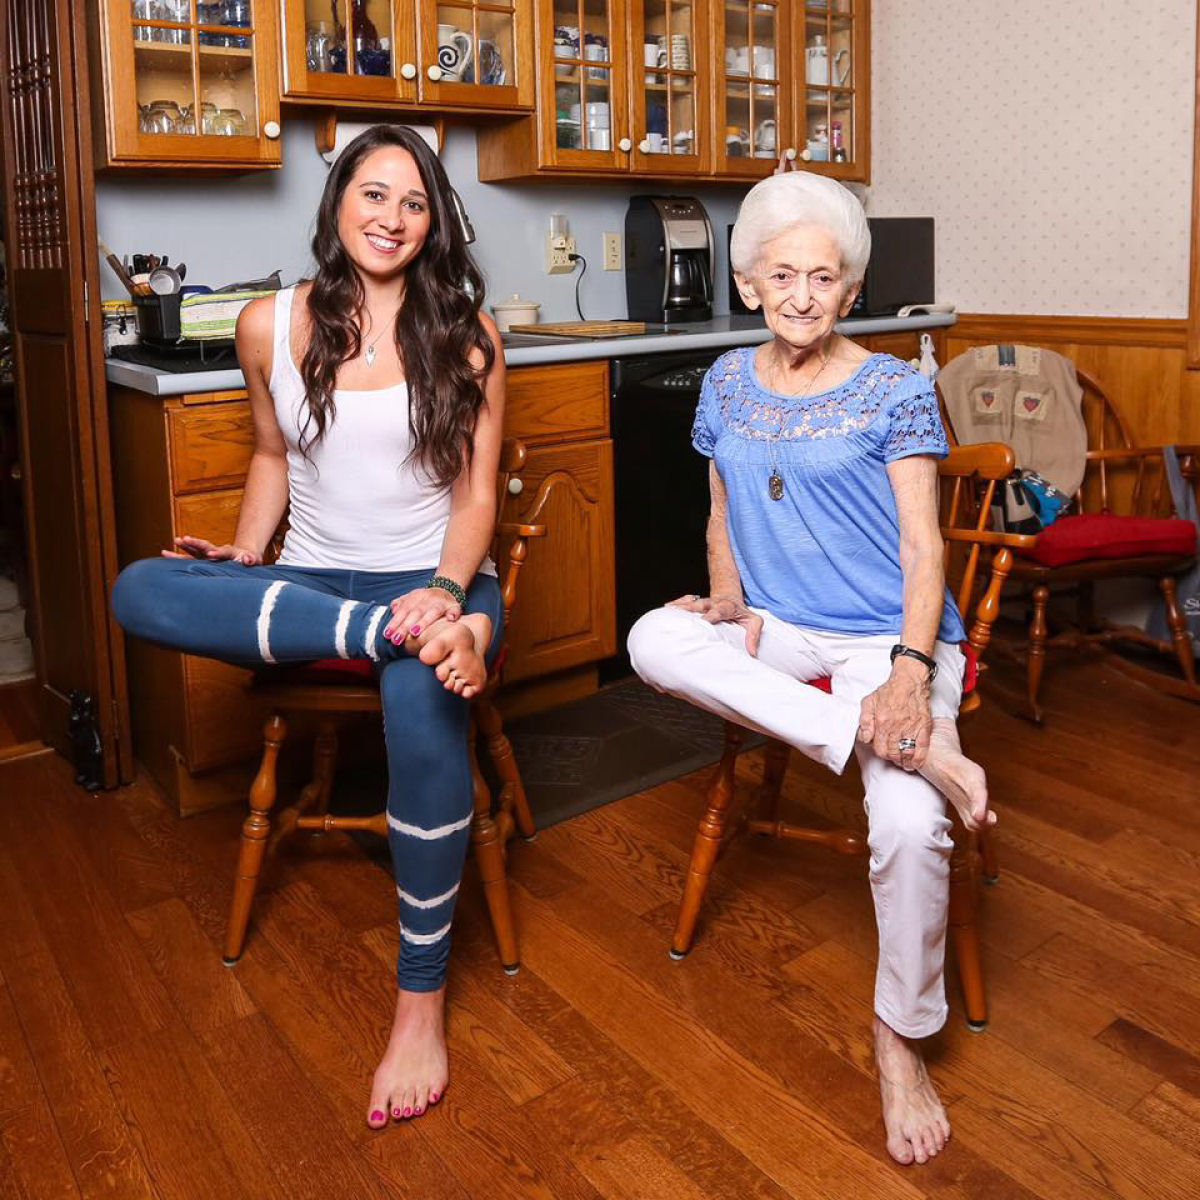 A transformao incrvel de uma vov de 86 anos por causa da ioga